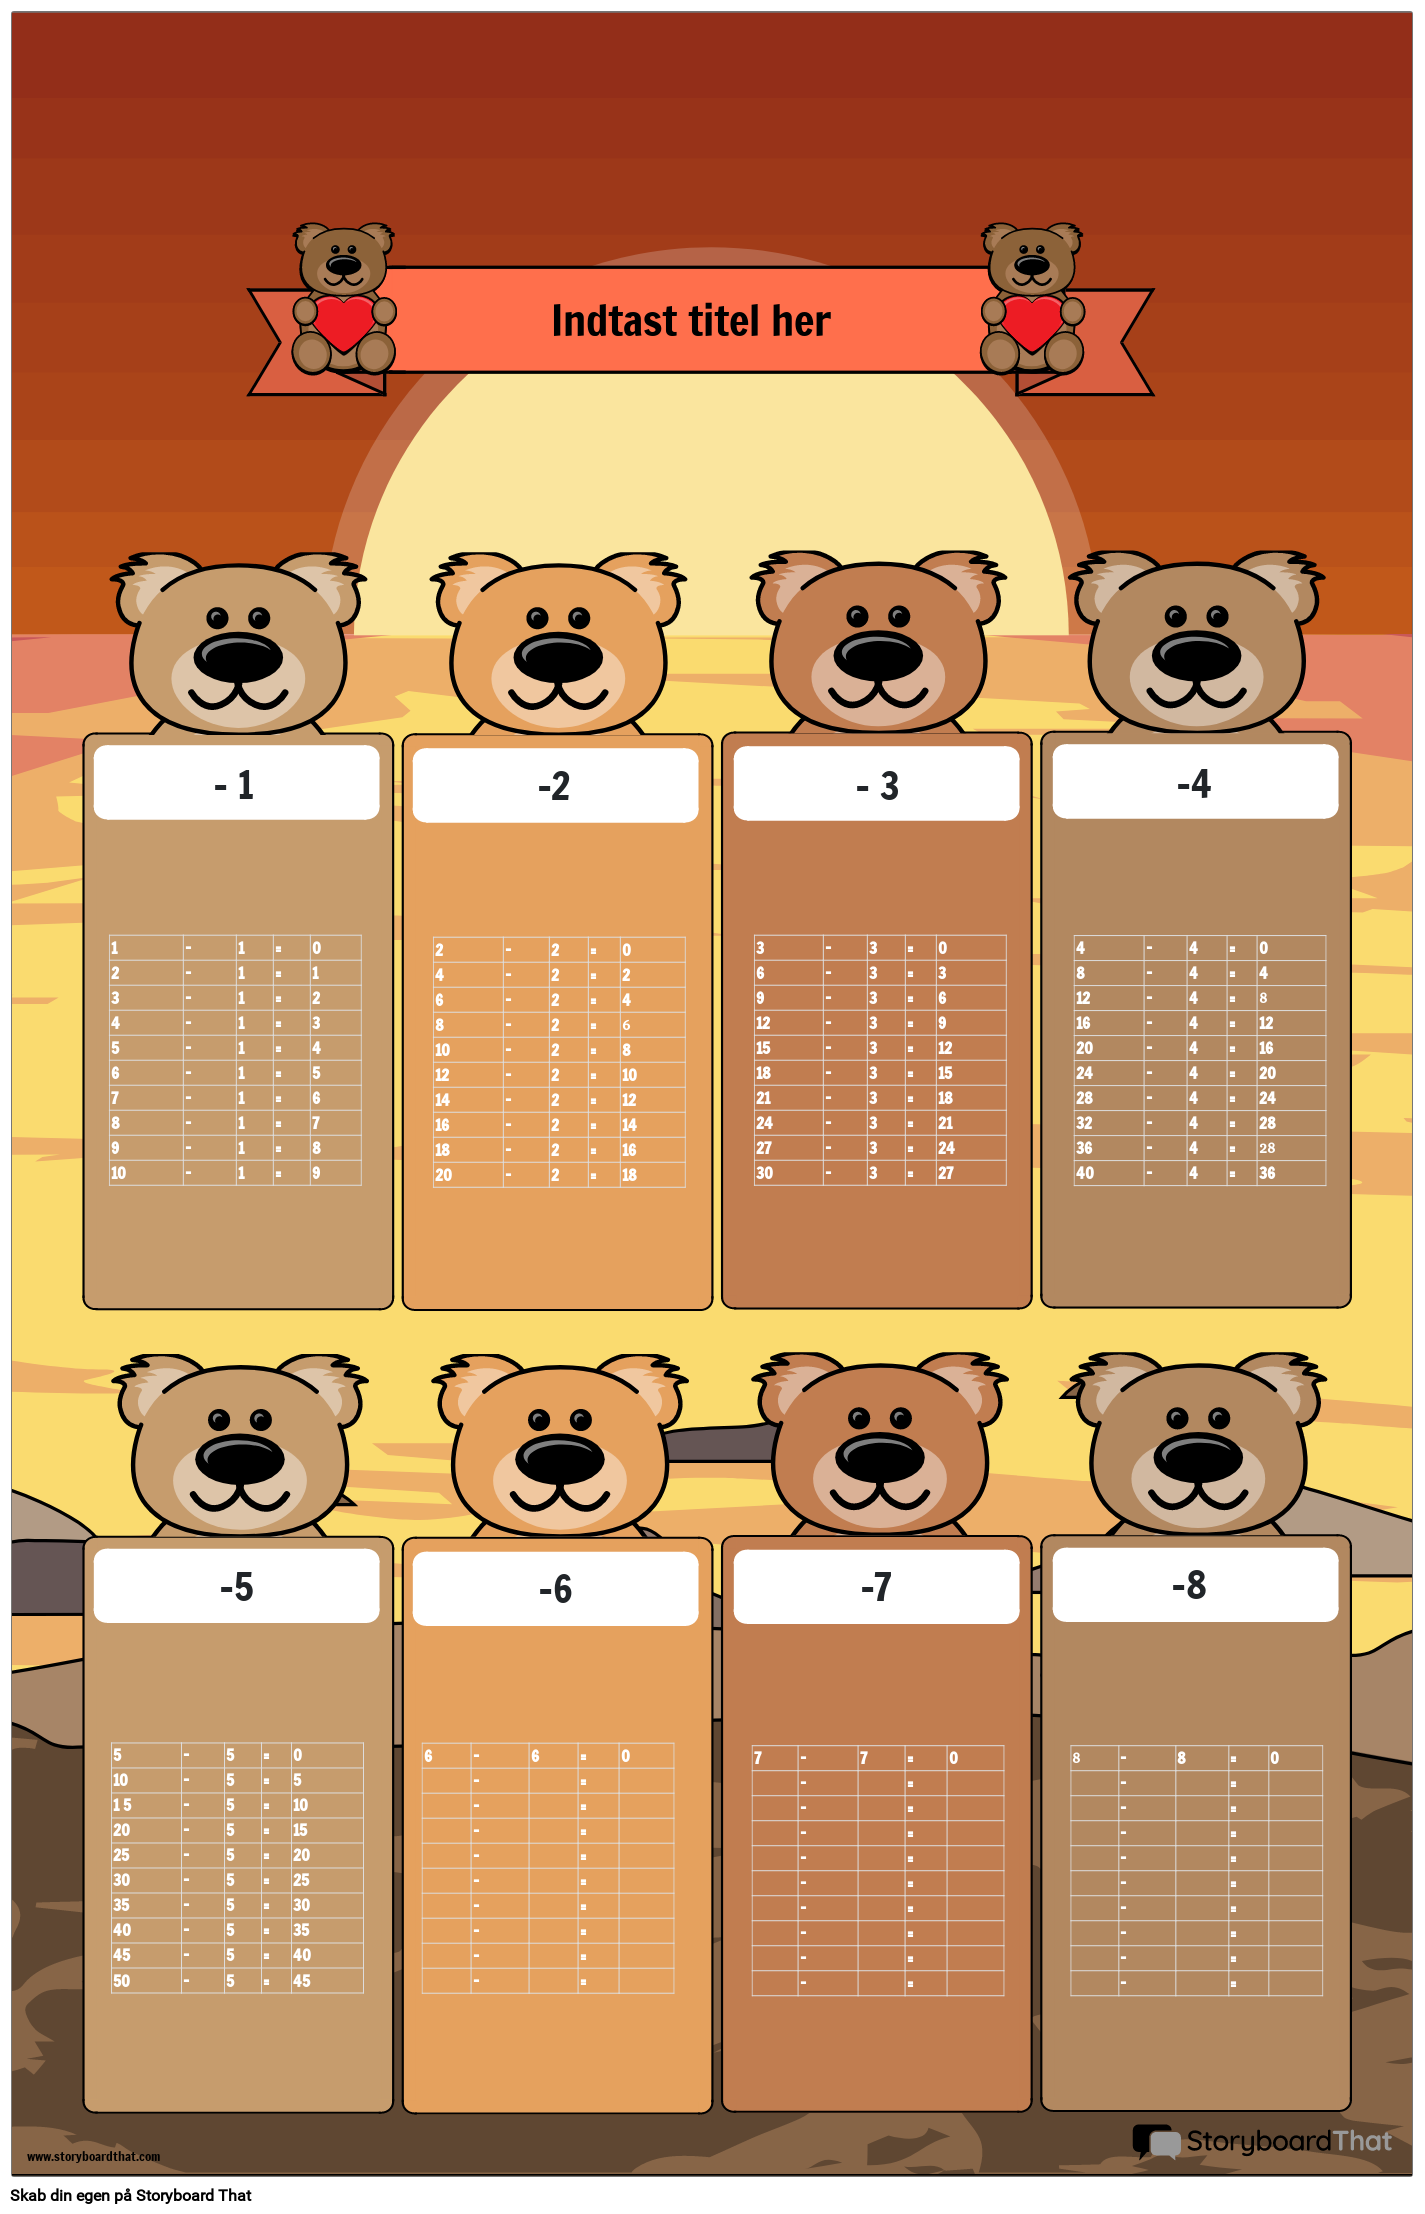 Subtraktionsdiagram plakat med bjørne-tema